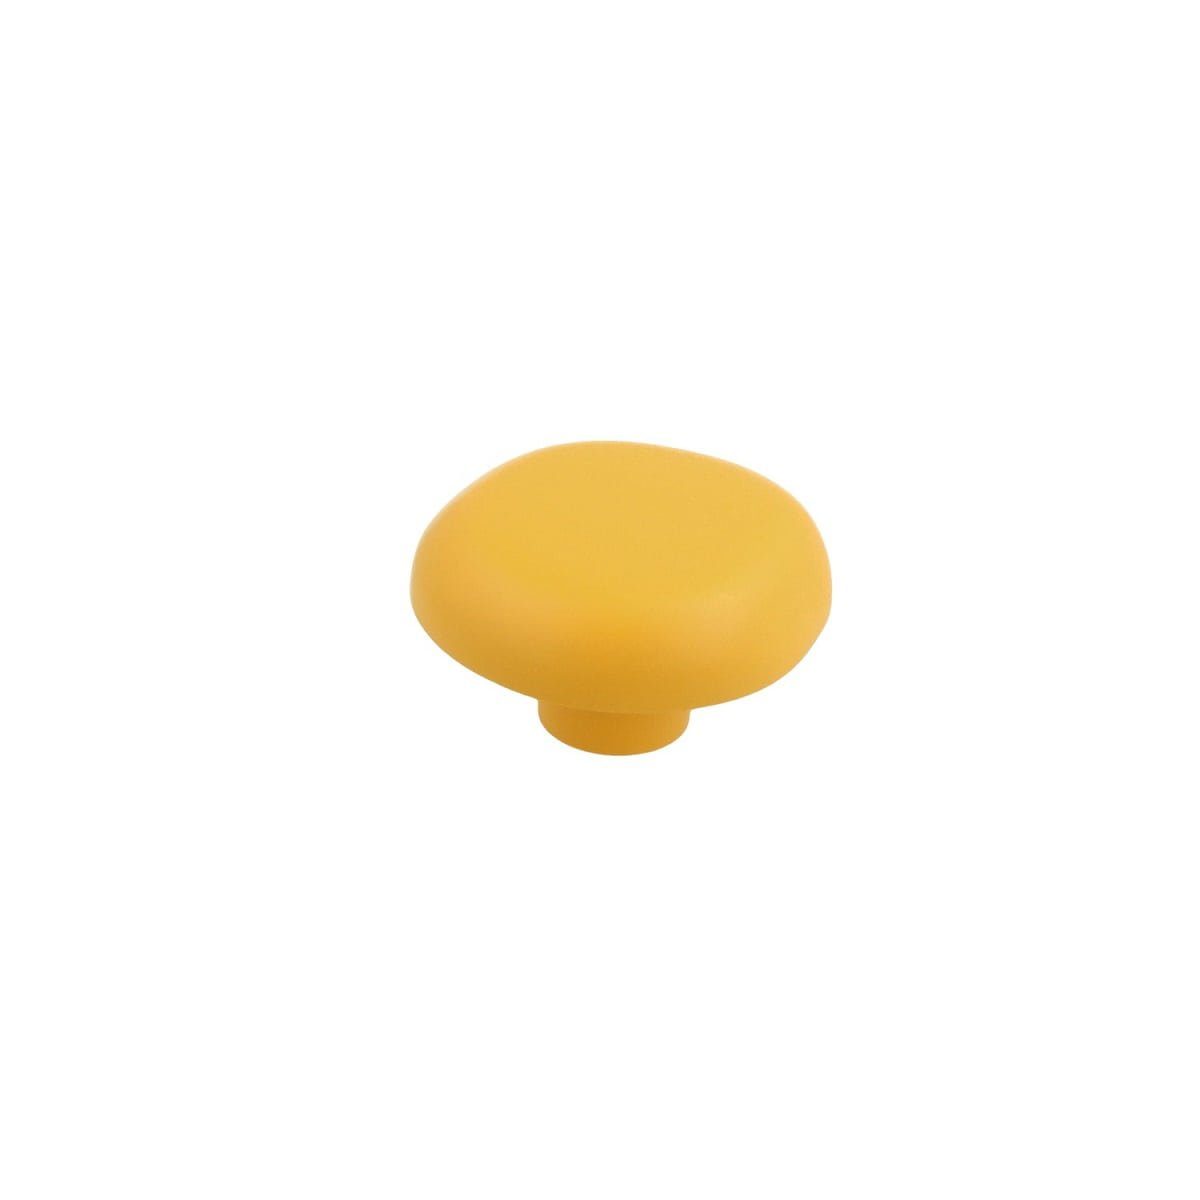 MS Beschläge Türbeschlag Möbelknopf Schrankknopf Kinderzimmerknopf Modell Gelber Pilz Kommodenk